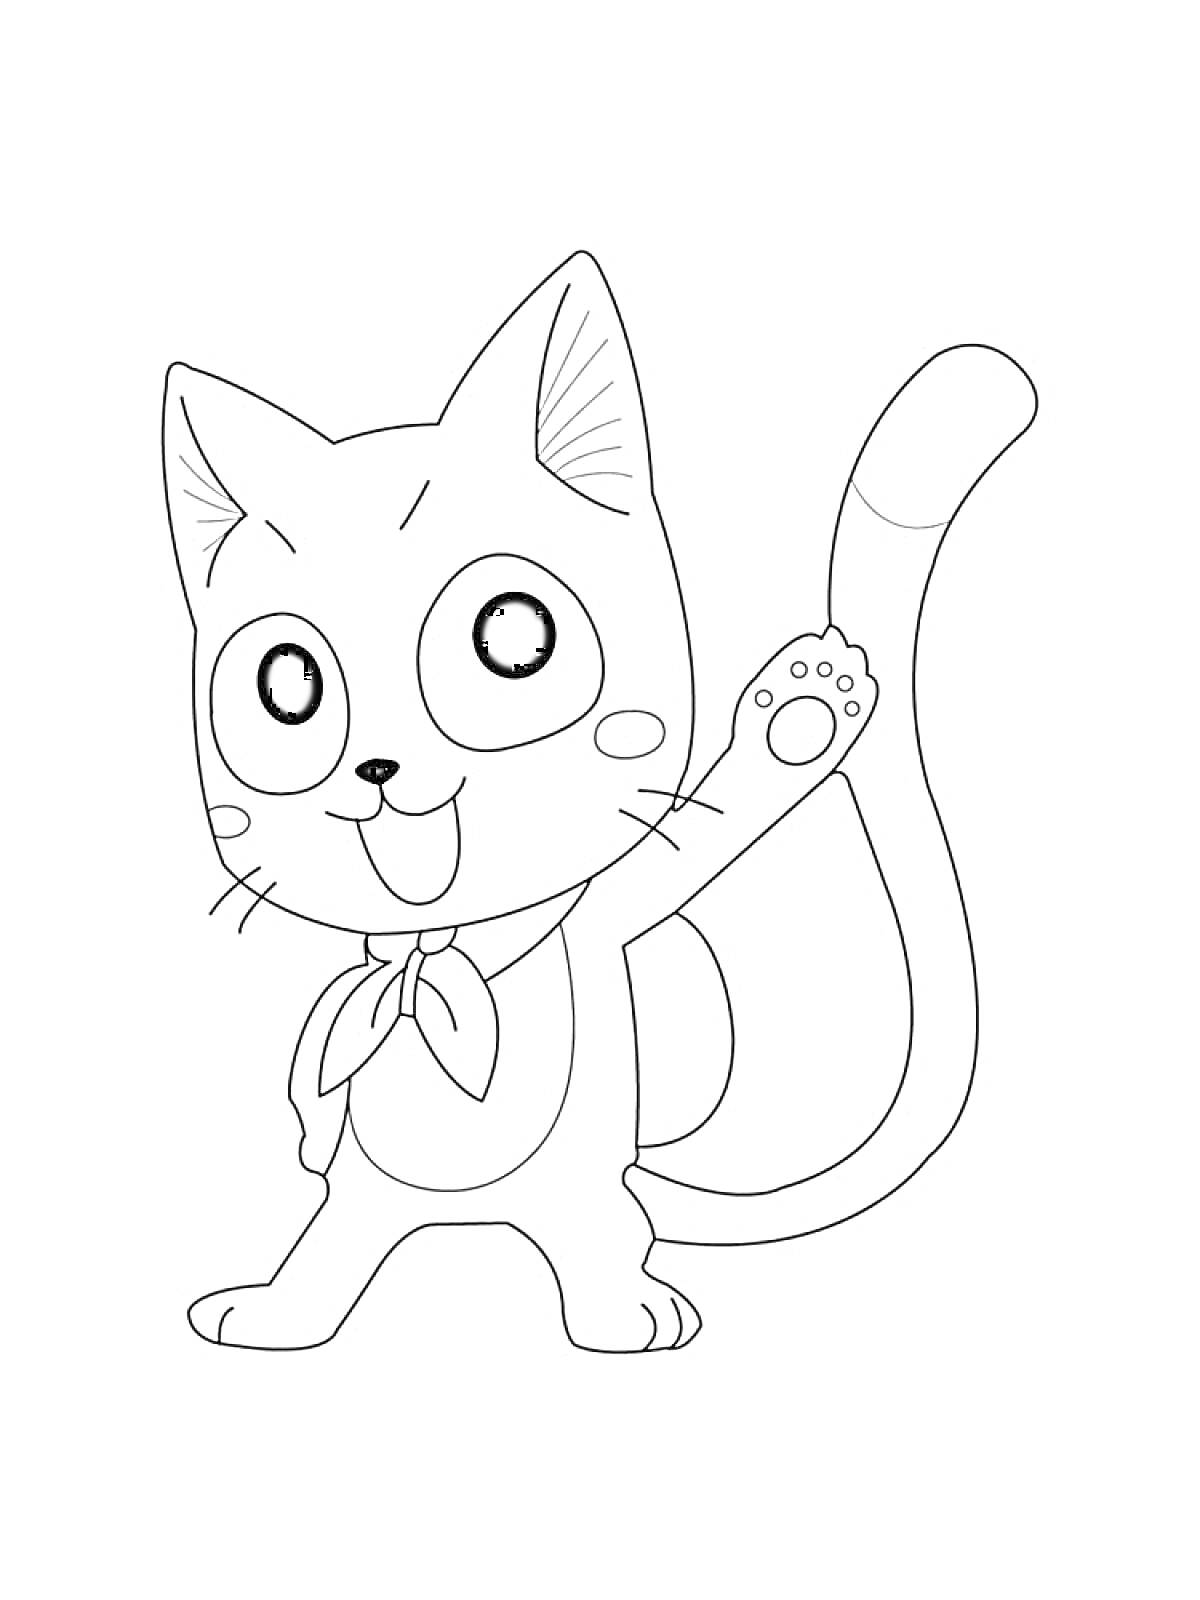 Раскраска Кот с повязкой на шее, поднимающий лапу вверх